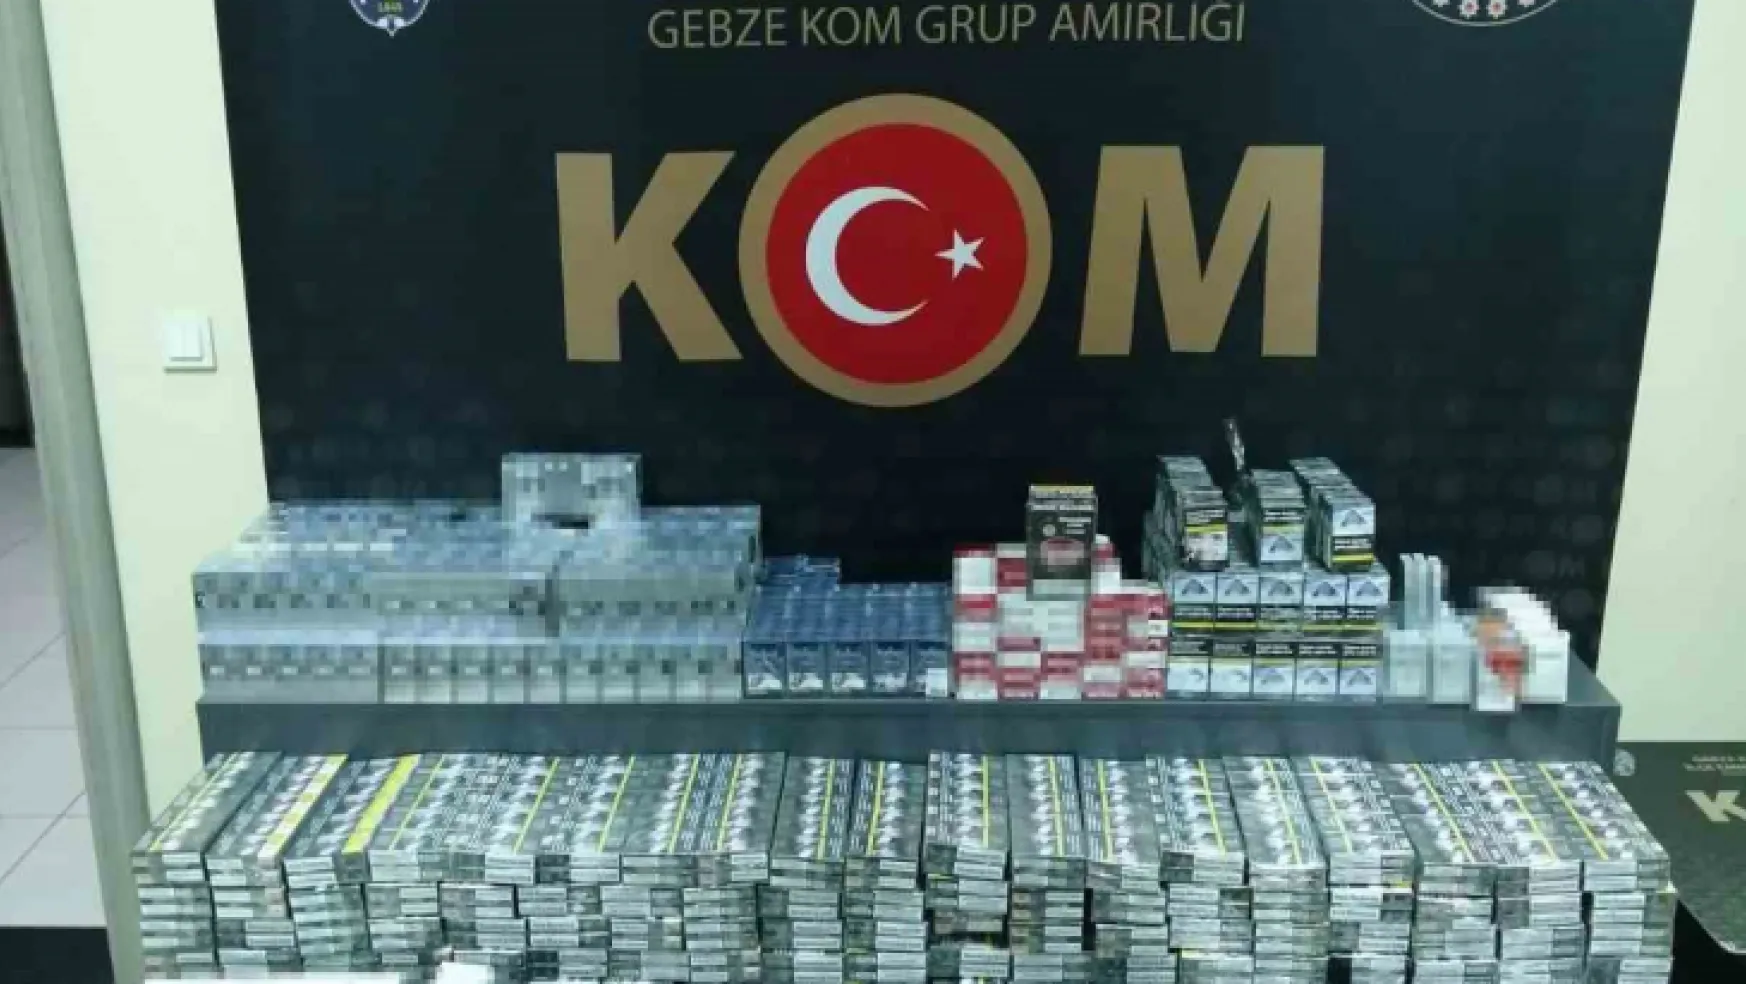 Kocaeli'de 3 bin paket kaçak sigara ele geçirildi